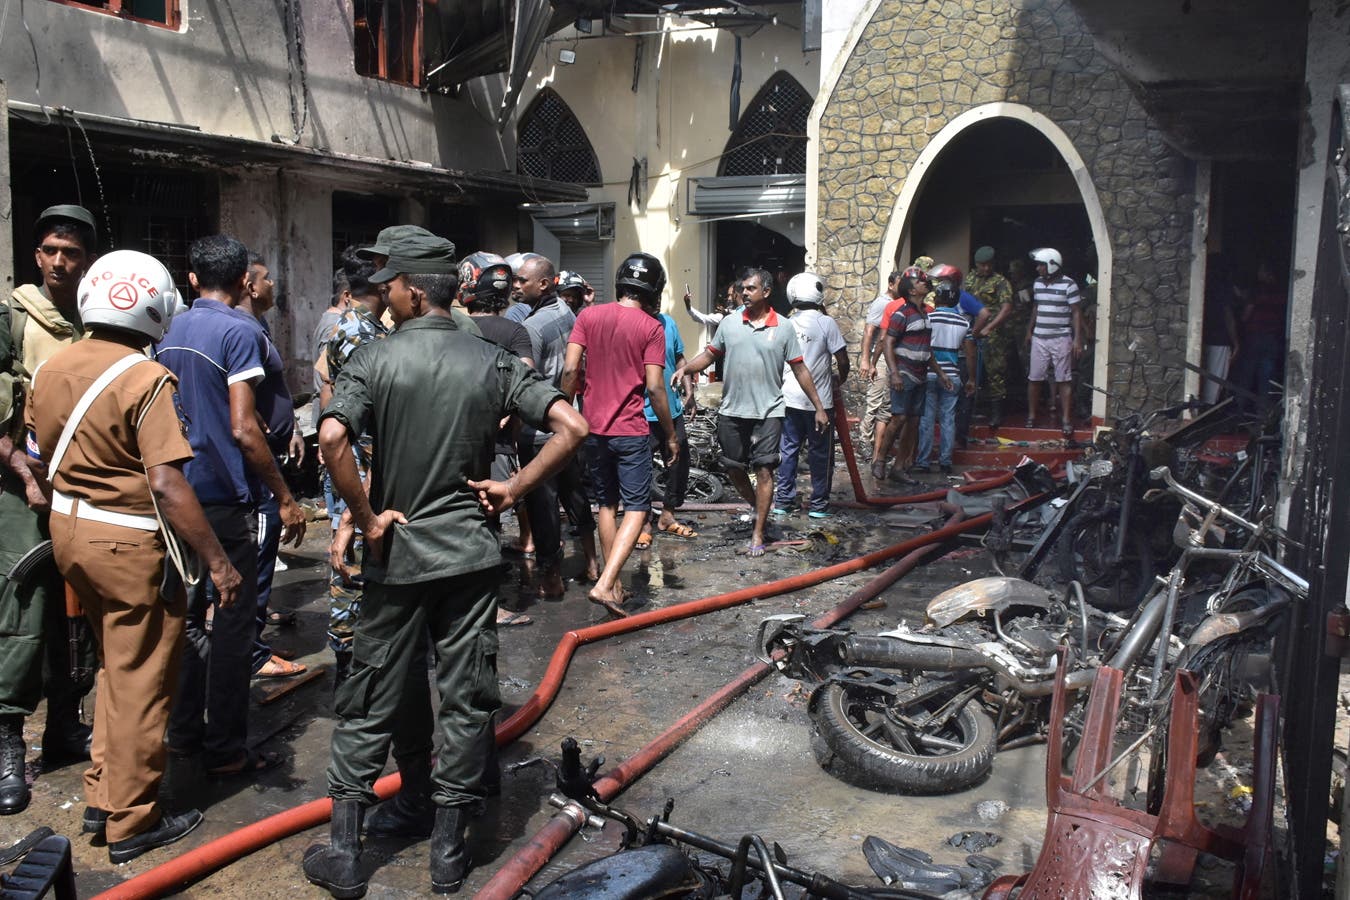 Verwüstung und Zerstörung: Vor der Kirche Batticalova in Colombo herrscht Chaos nach der Explosion. (Bild: Keystone)